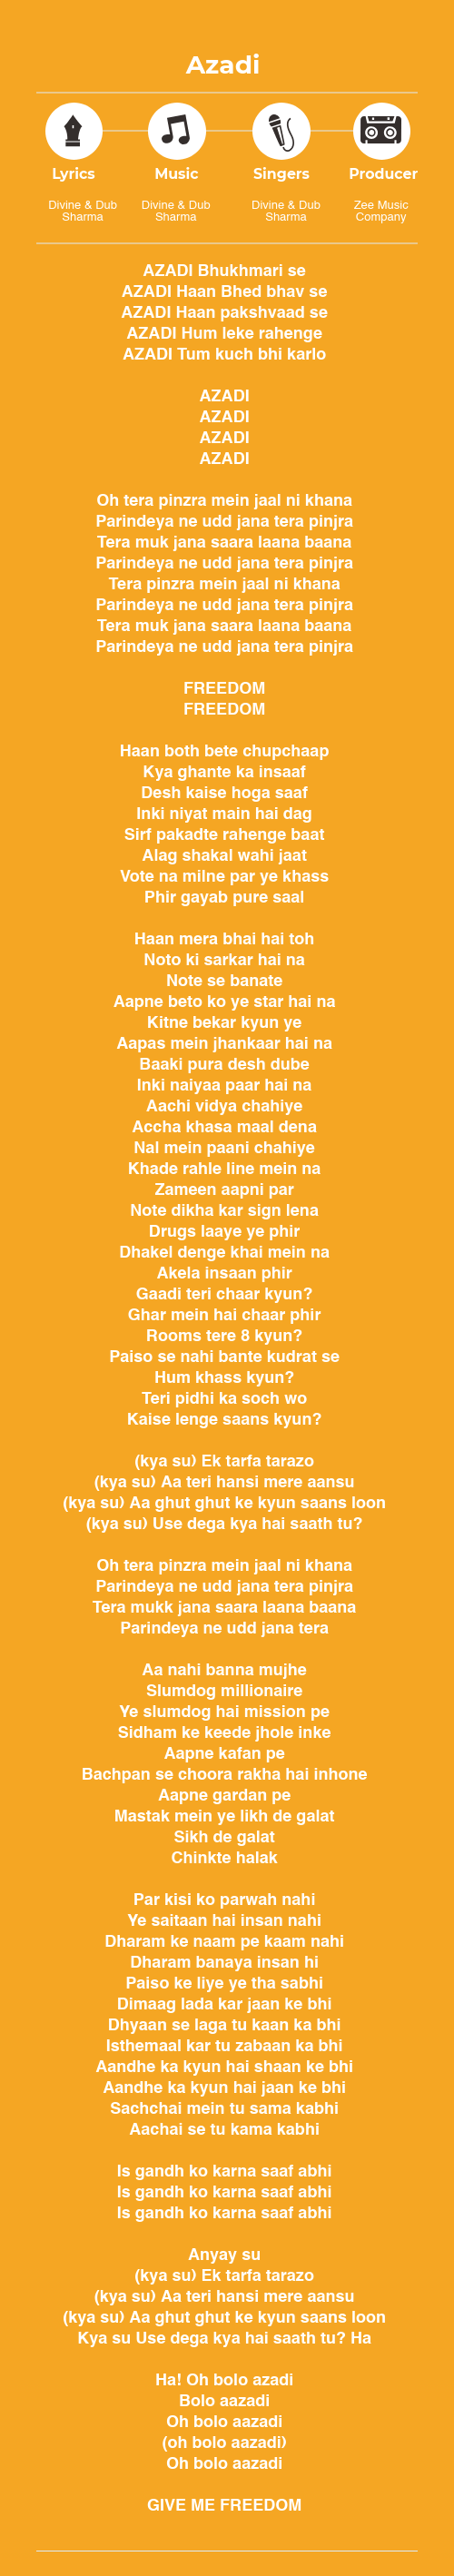 Azadi Gully Boy Song Lyrics